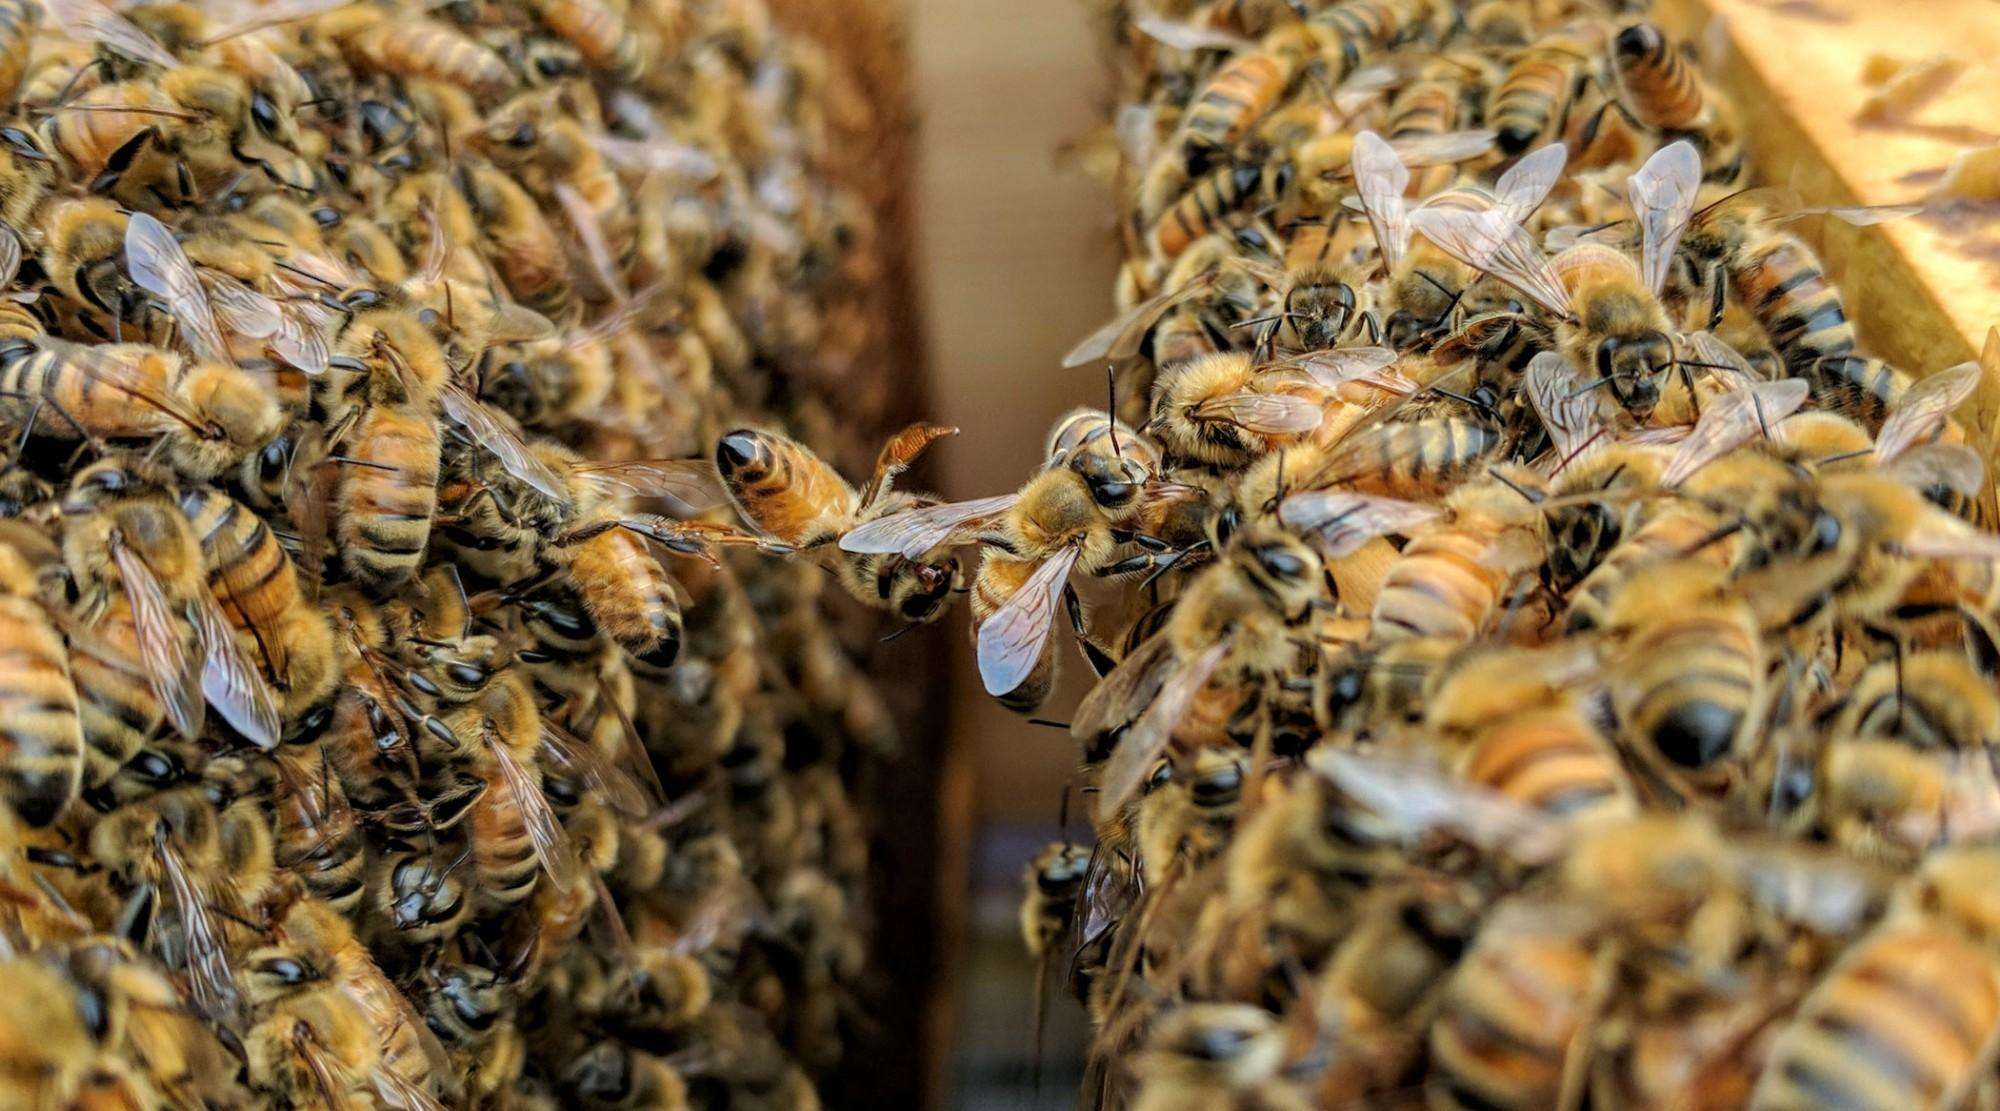 मधुमक्खी का जहर दिलाएगा फेफड़ों की बीमारी से निजात